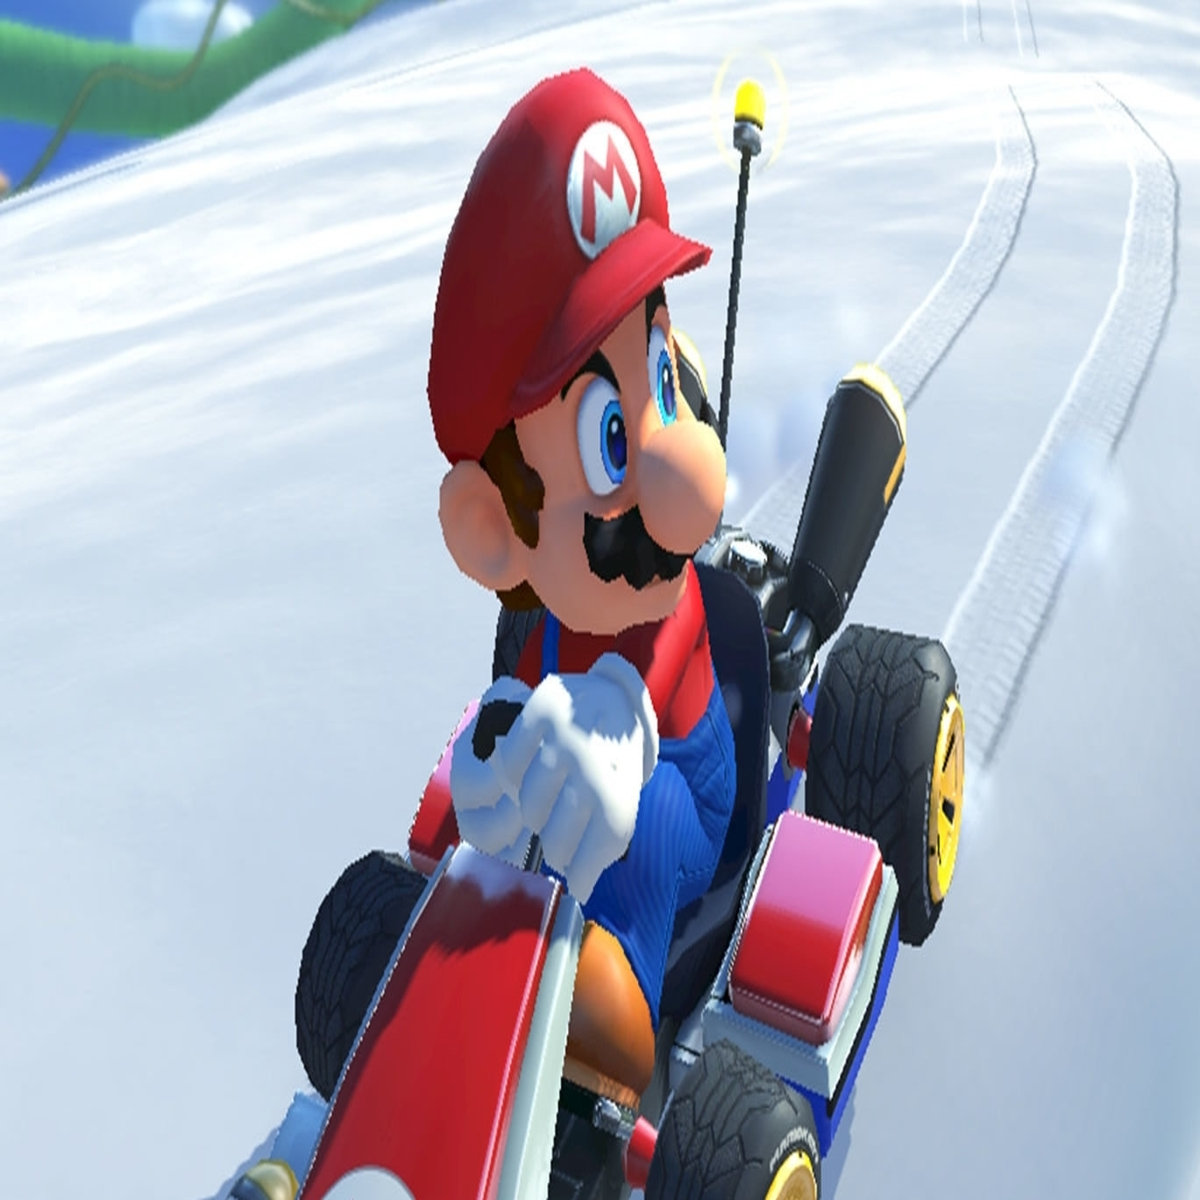 La beta de 'Mario Kart Tour' ya está aquí y esto es todo lo que